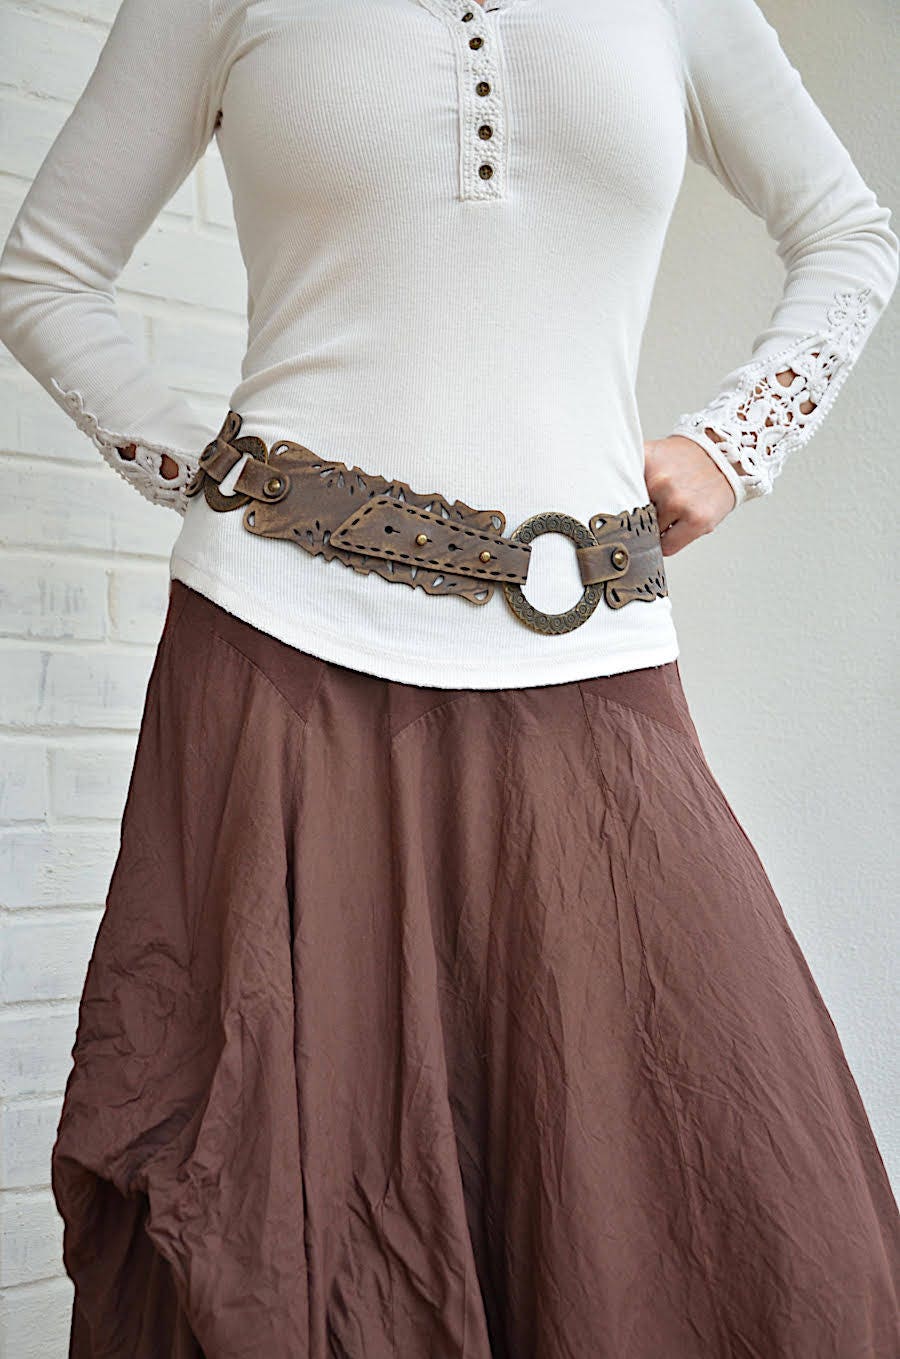 Wide leather belt Womens belt Brown leather belt for women